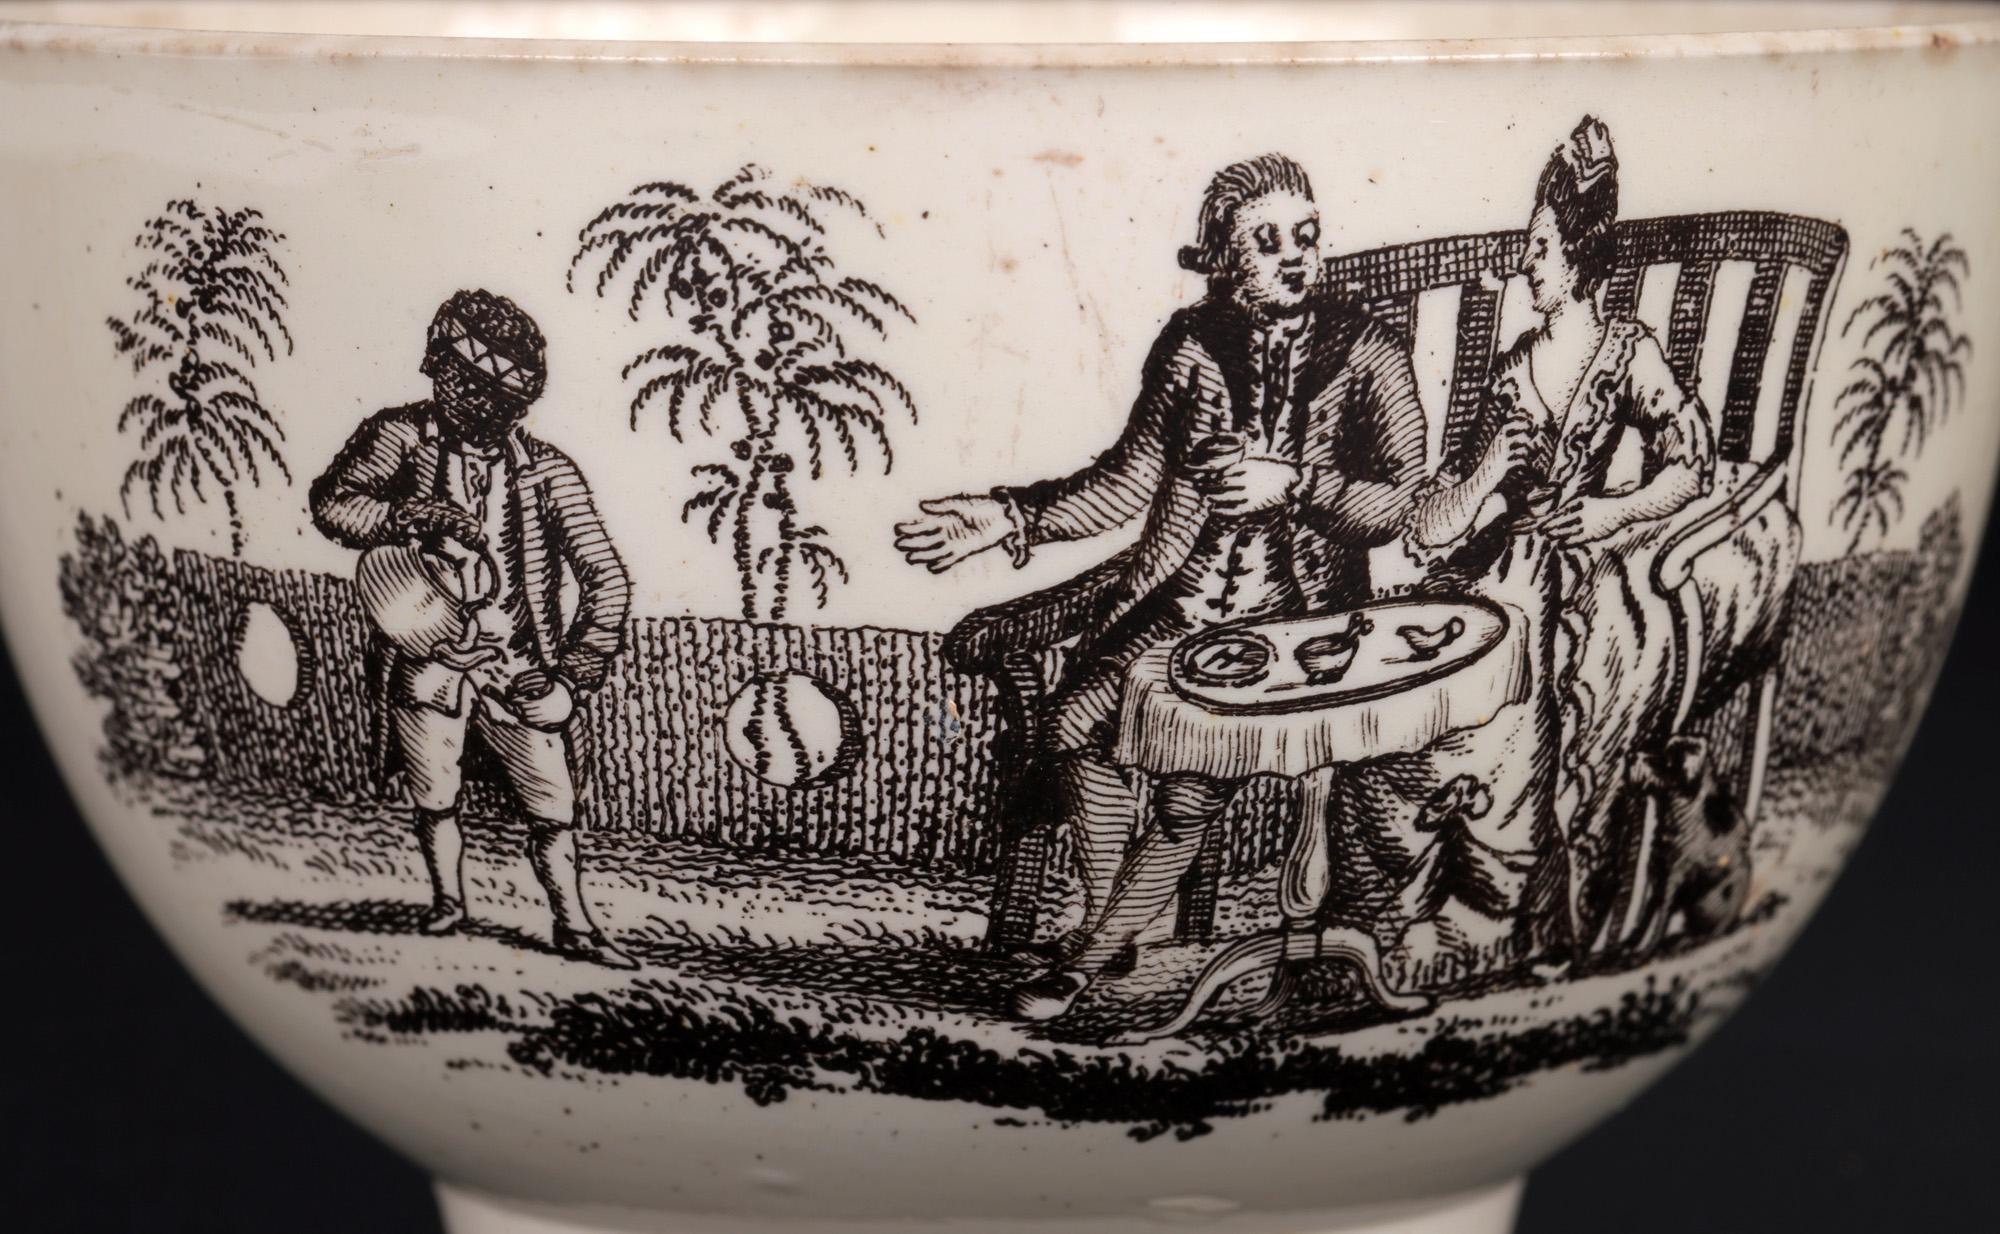 Une très belle tasse à thé ancienne en creamware anglaise, imprimée de scènes sur deux côtés, attribuée à Wedgwood et datant d'environ 1770. La théière est légèrement empotée et repose sur un étroit pied rond, avec un corps simple en forme de bol